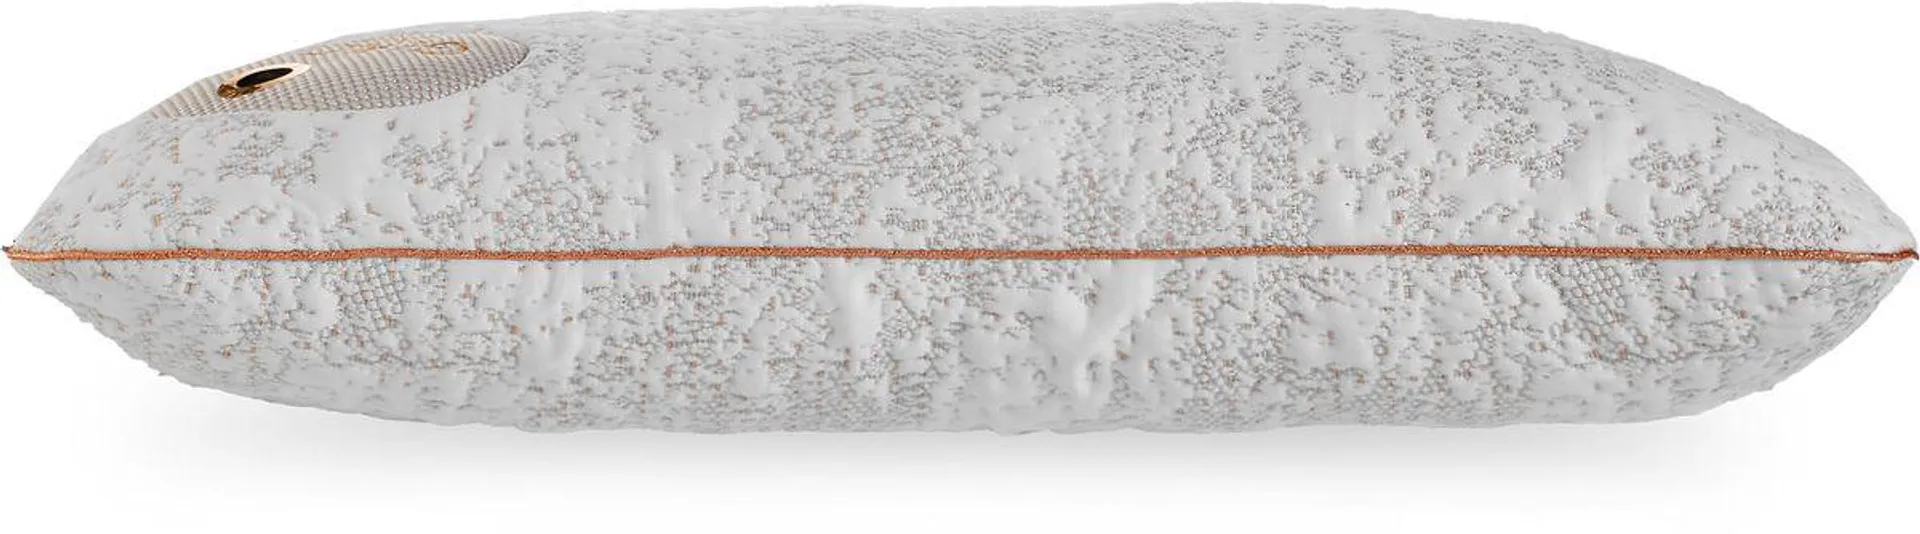 Bedgear Glacier Pillow